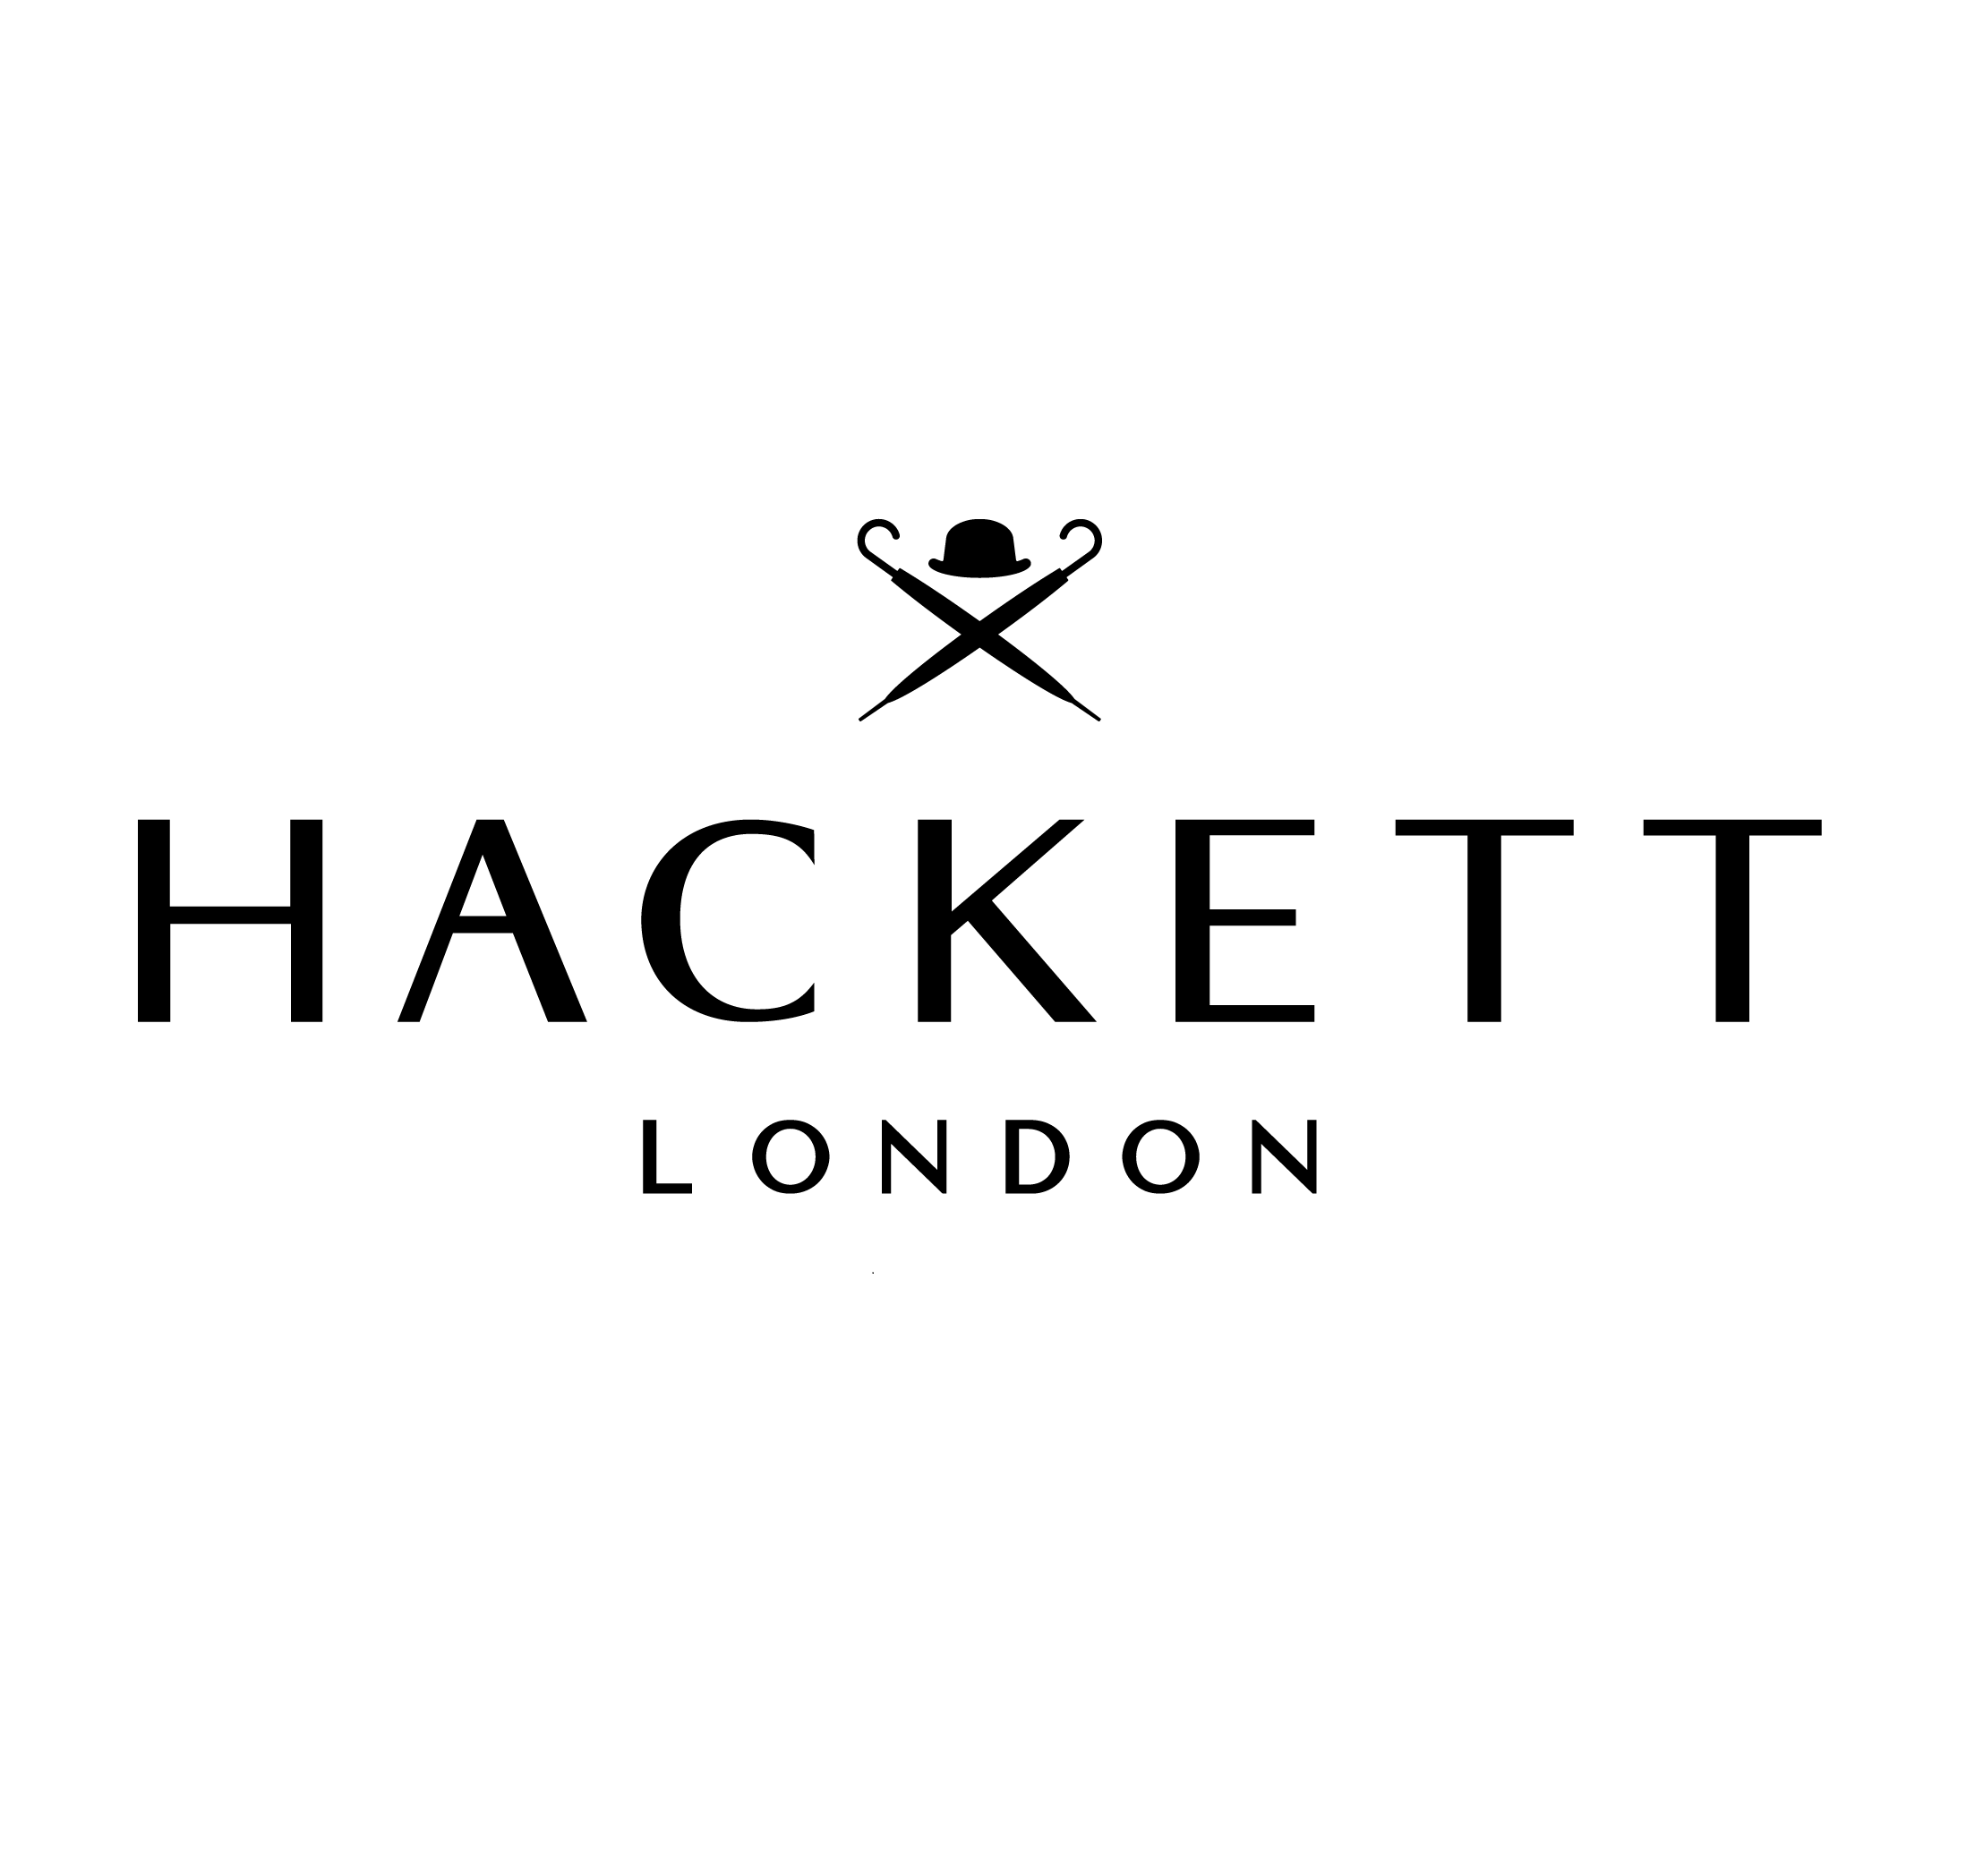 Hackett London Liberdade Lisboa